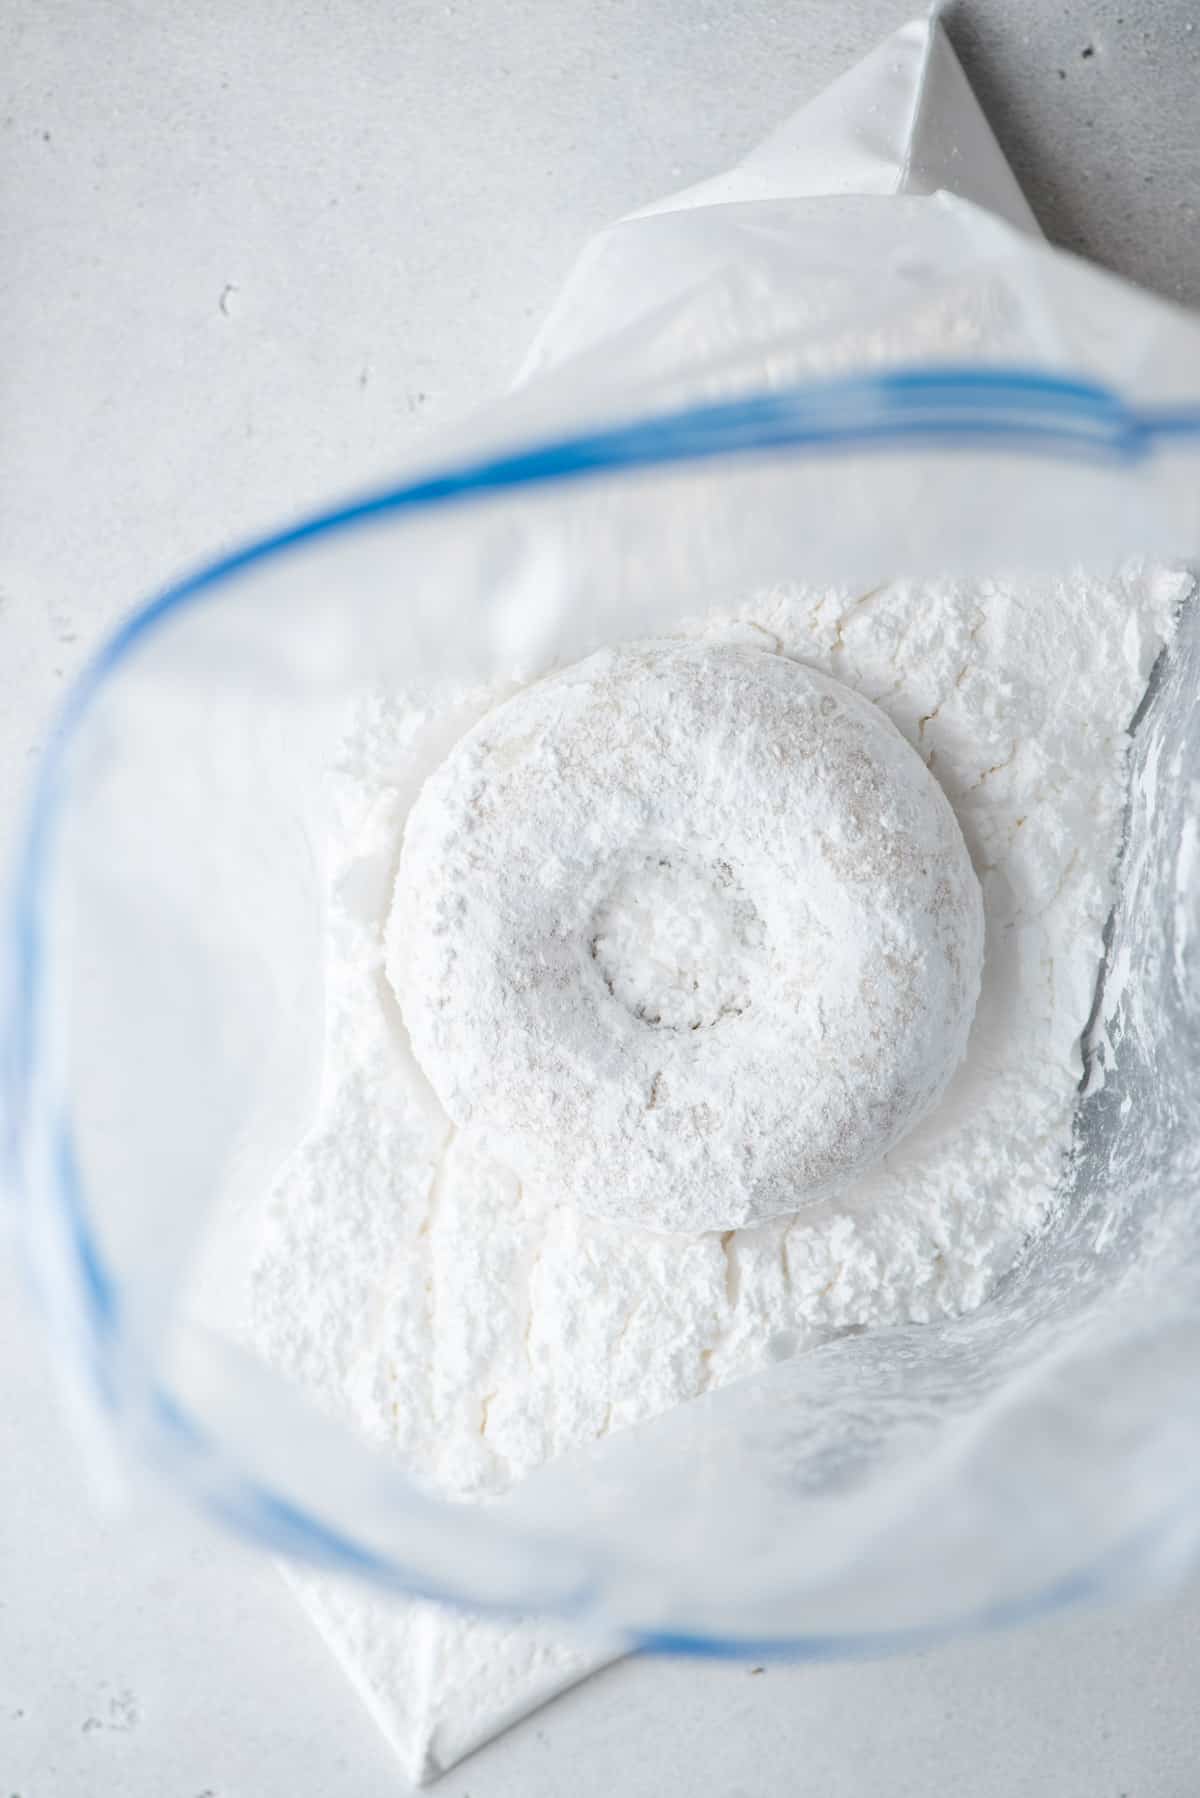 A donut n a ziploc with powdered sugar